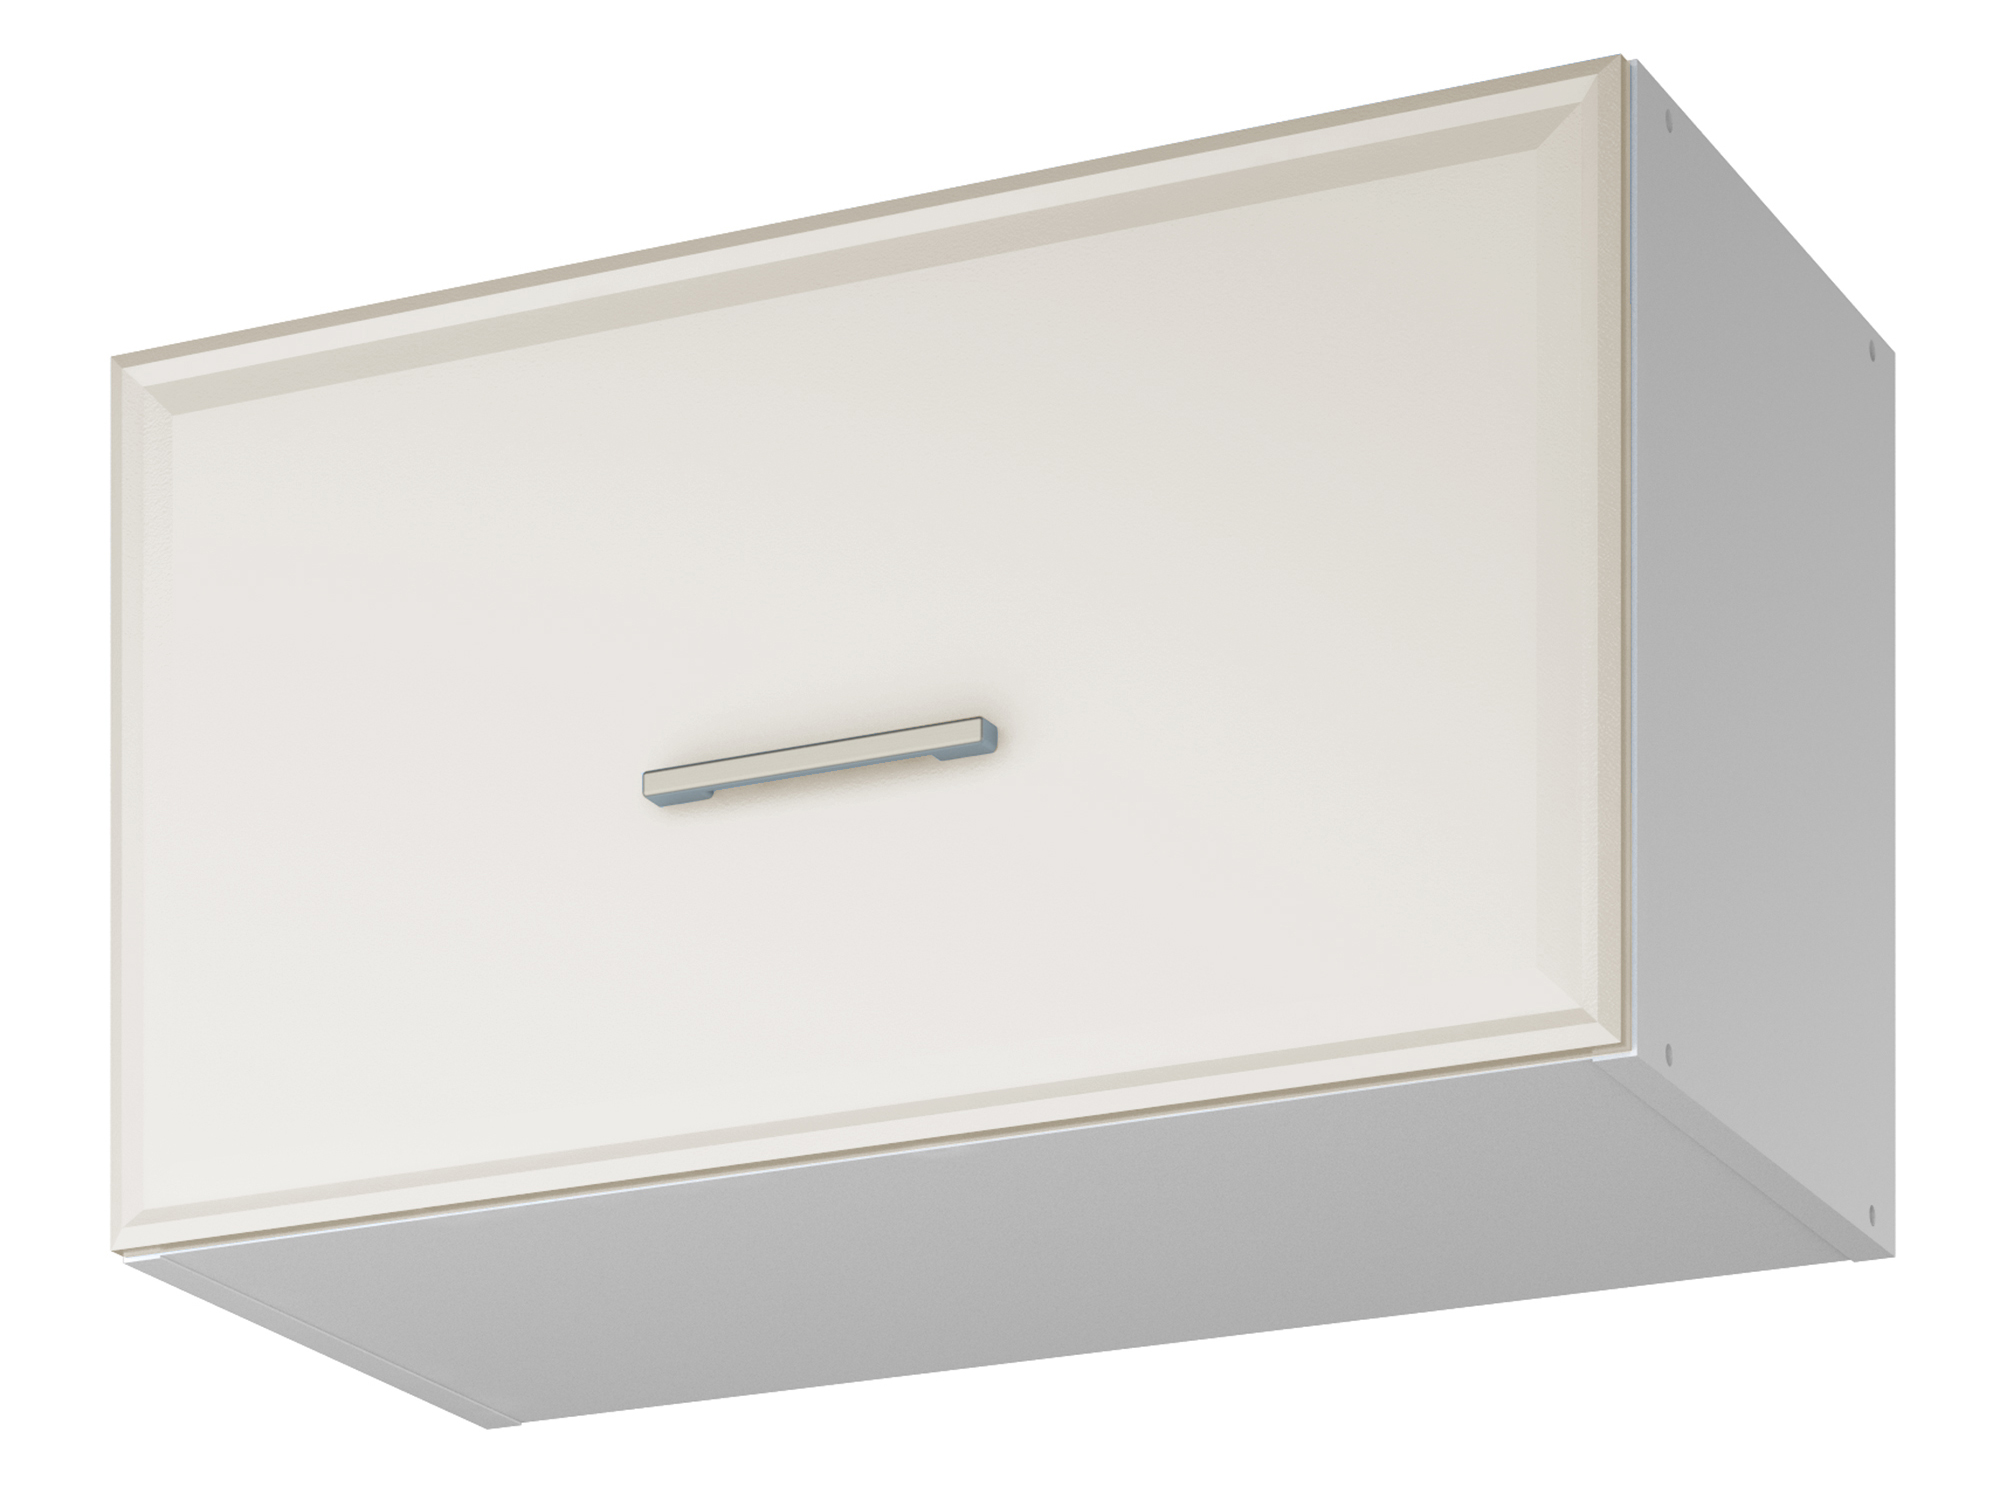 Шкаф навесной для вытяжки Greta 60 см Светлый, , Белый, МДФ, ЛДСП